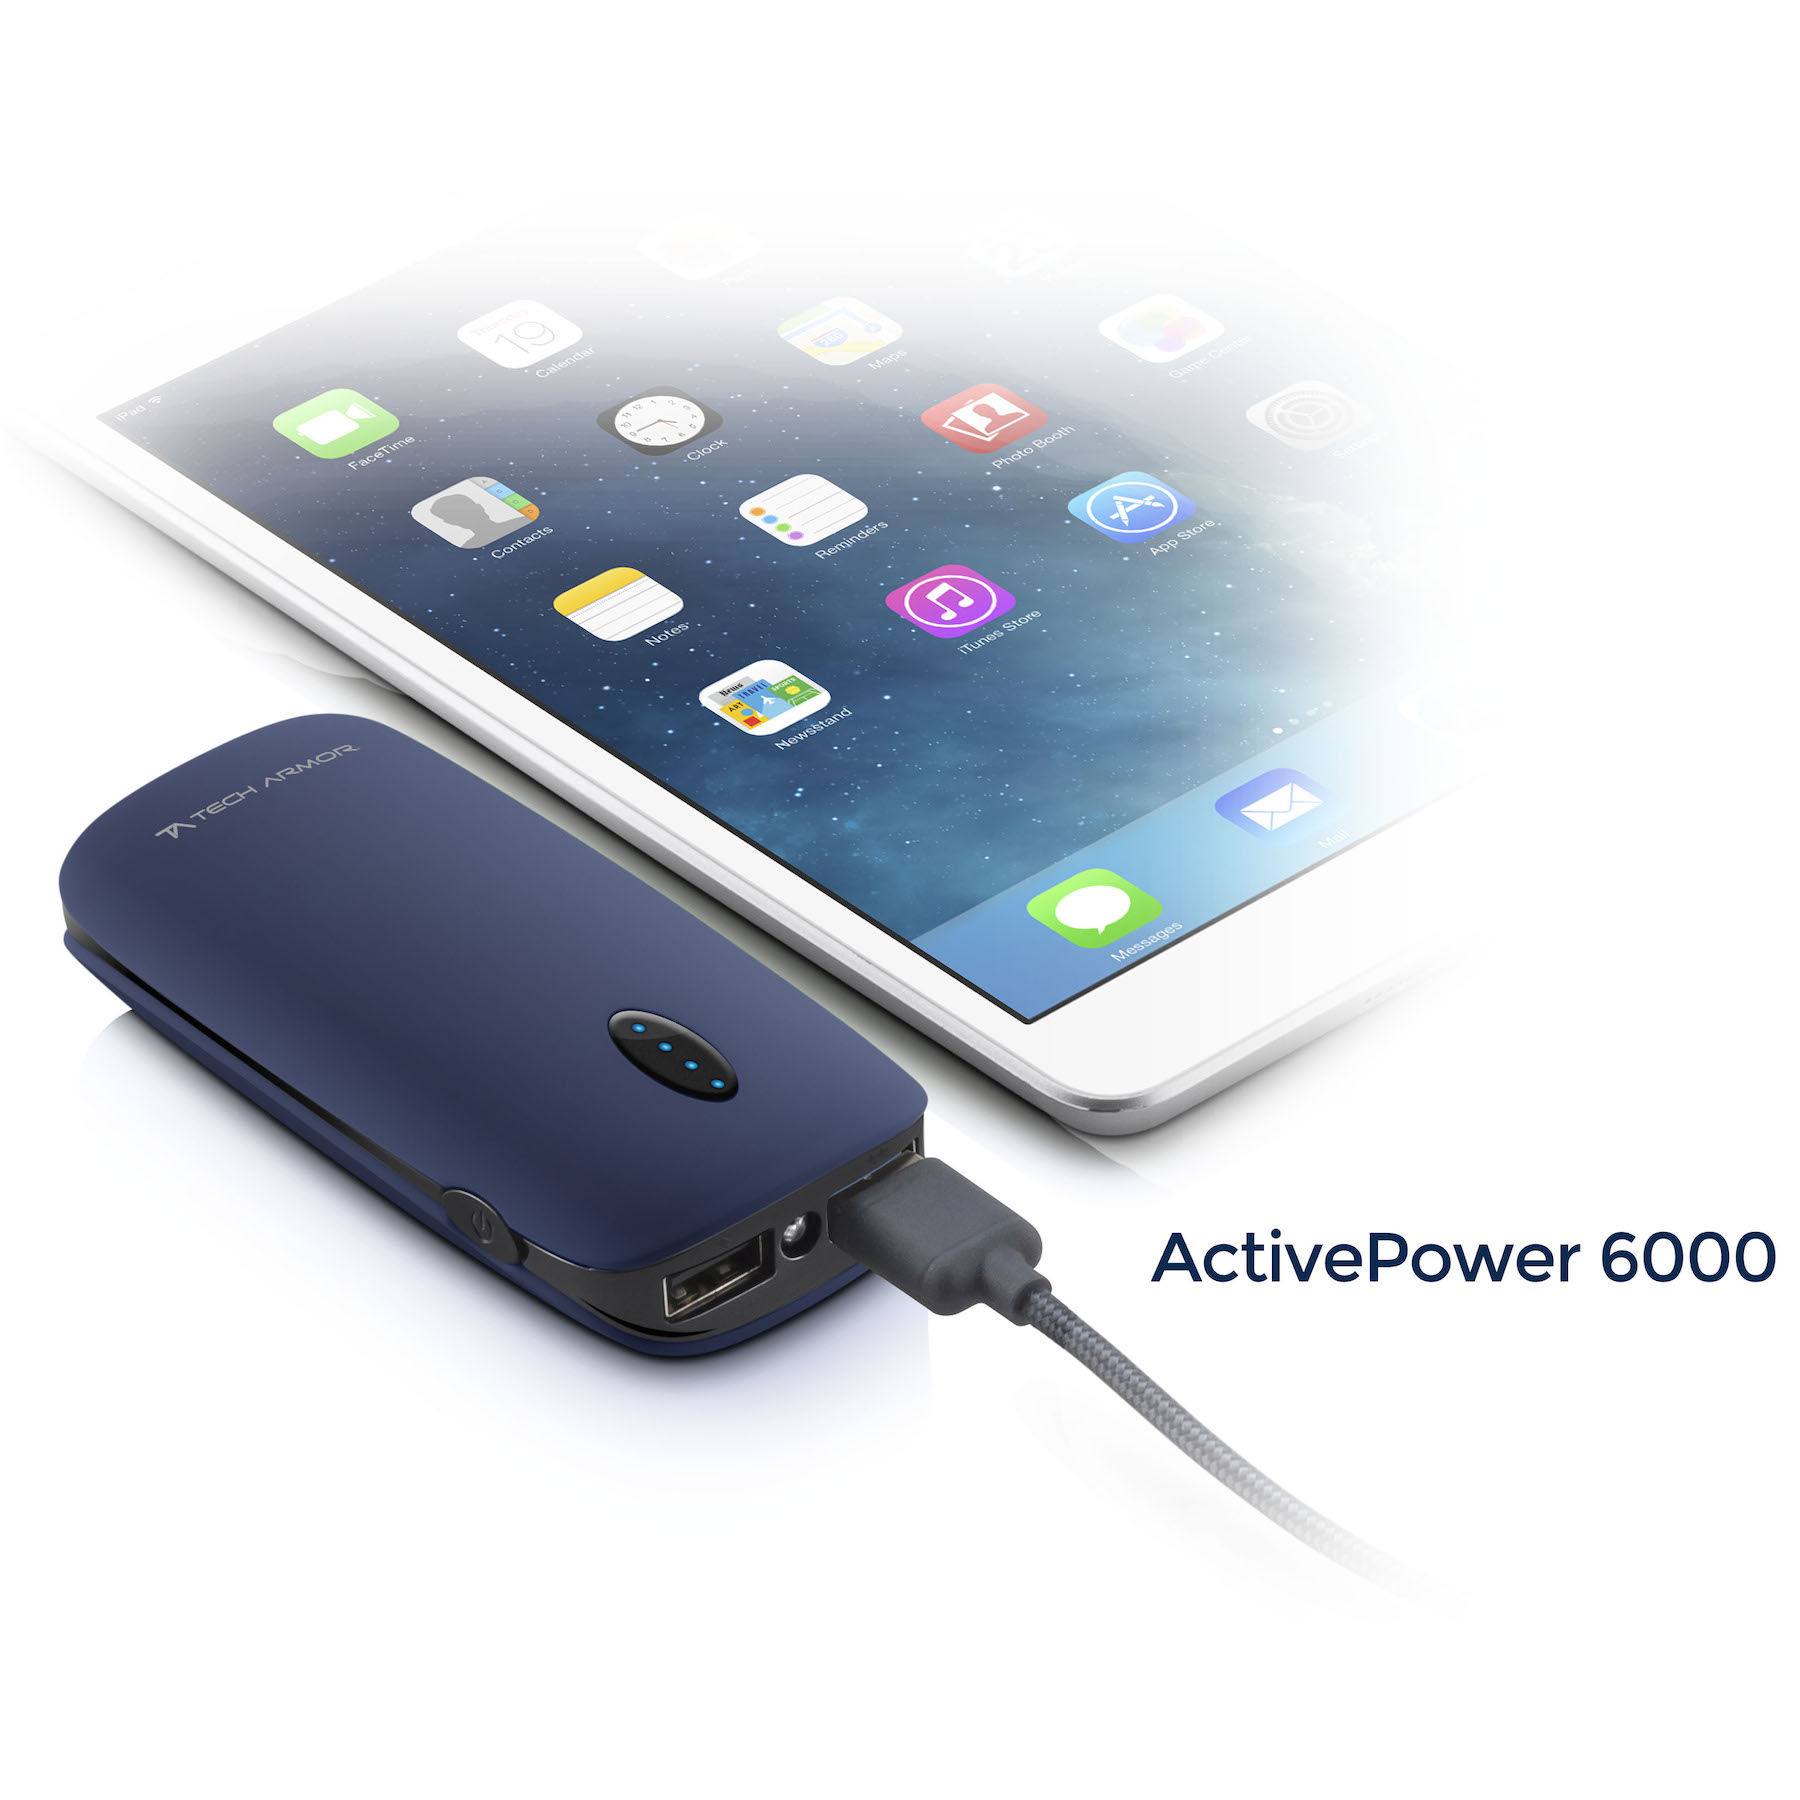 ActivePower 6000